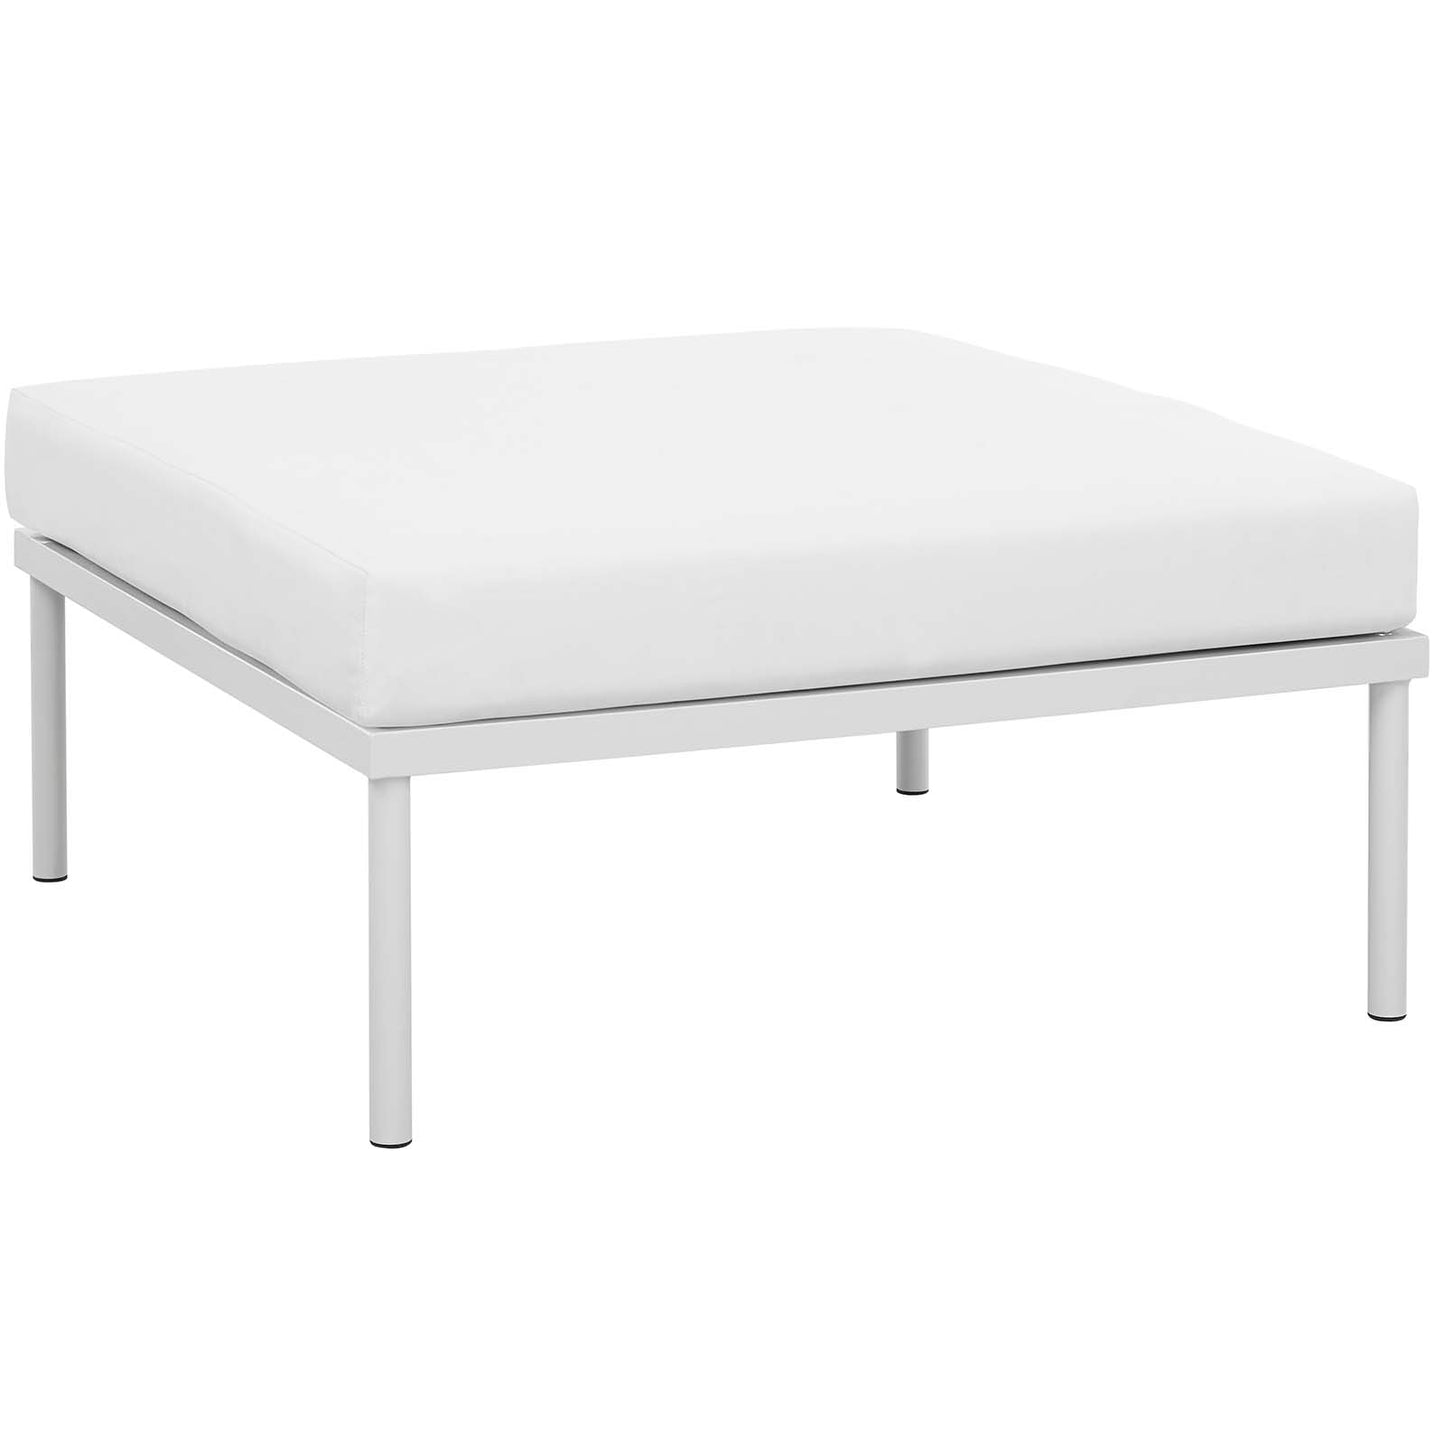 Harmony 3 Piece Outdoor Patio Aluminum Sectional Sofa Set White White EEI-2618-WHI-WHI-SET